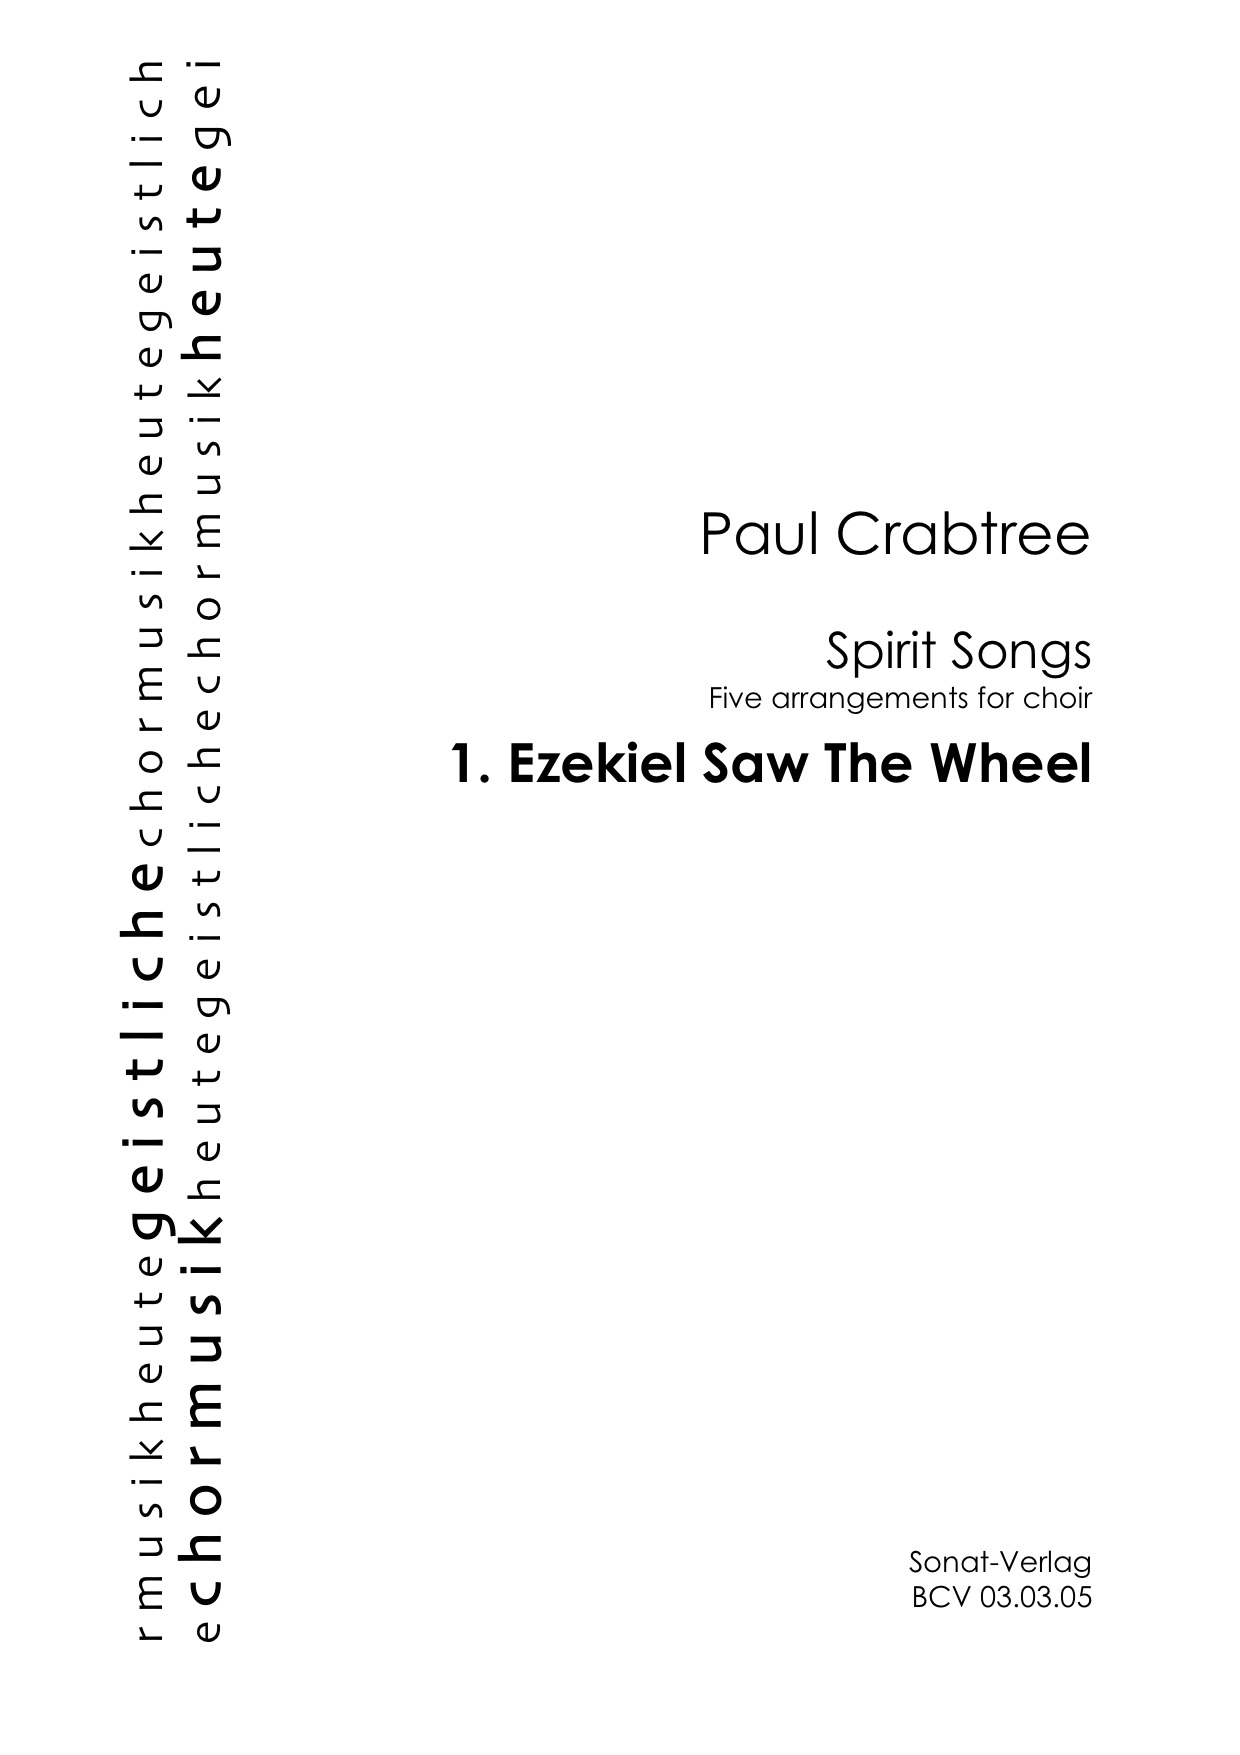 Ezekiel Saw The Wheel